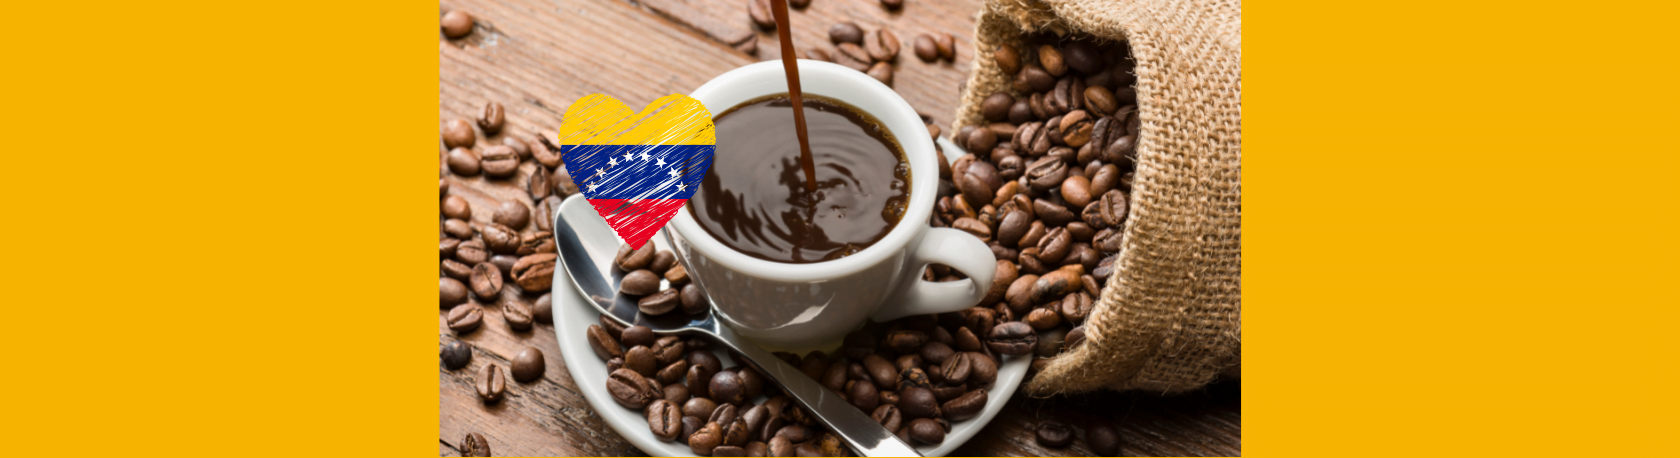 Easy Podcast: El guayoyo, la forma tradicionalmente venezolana de beber café